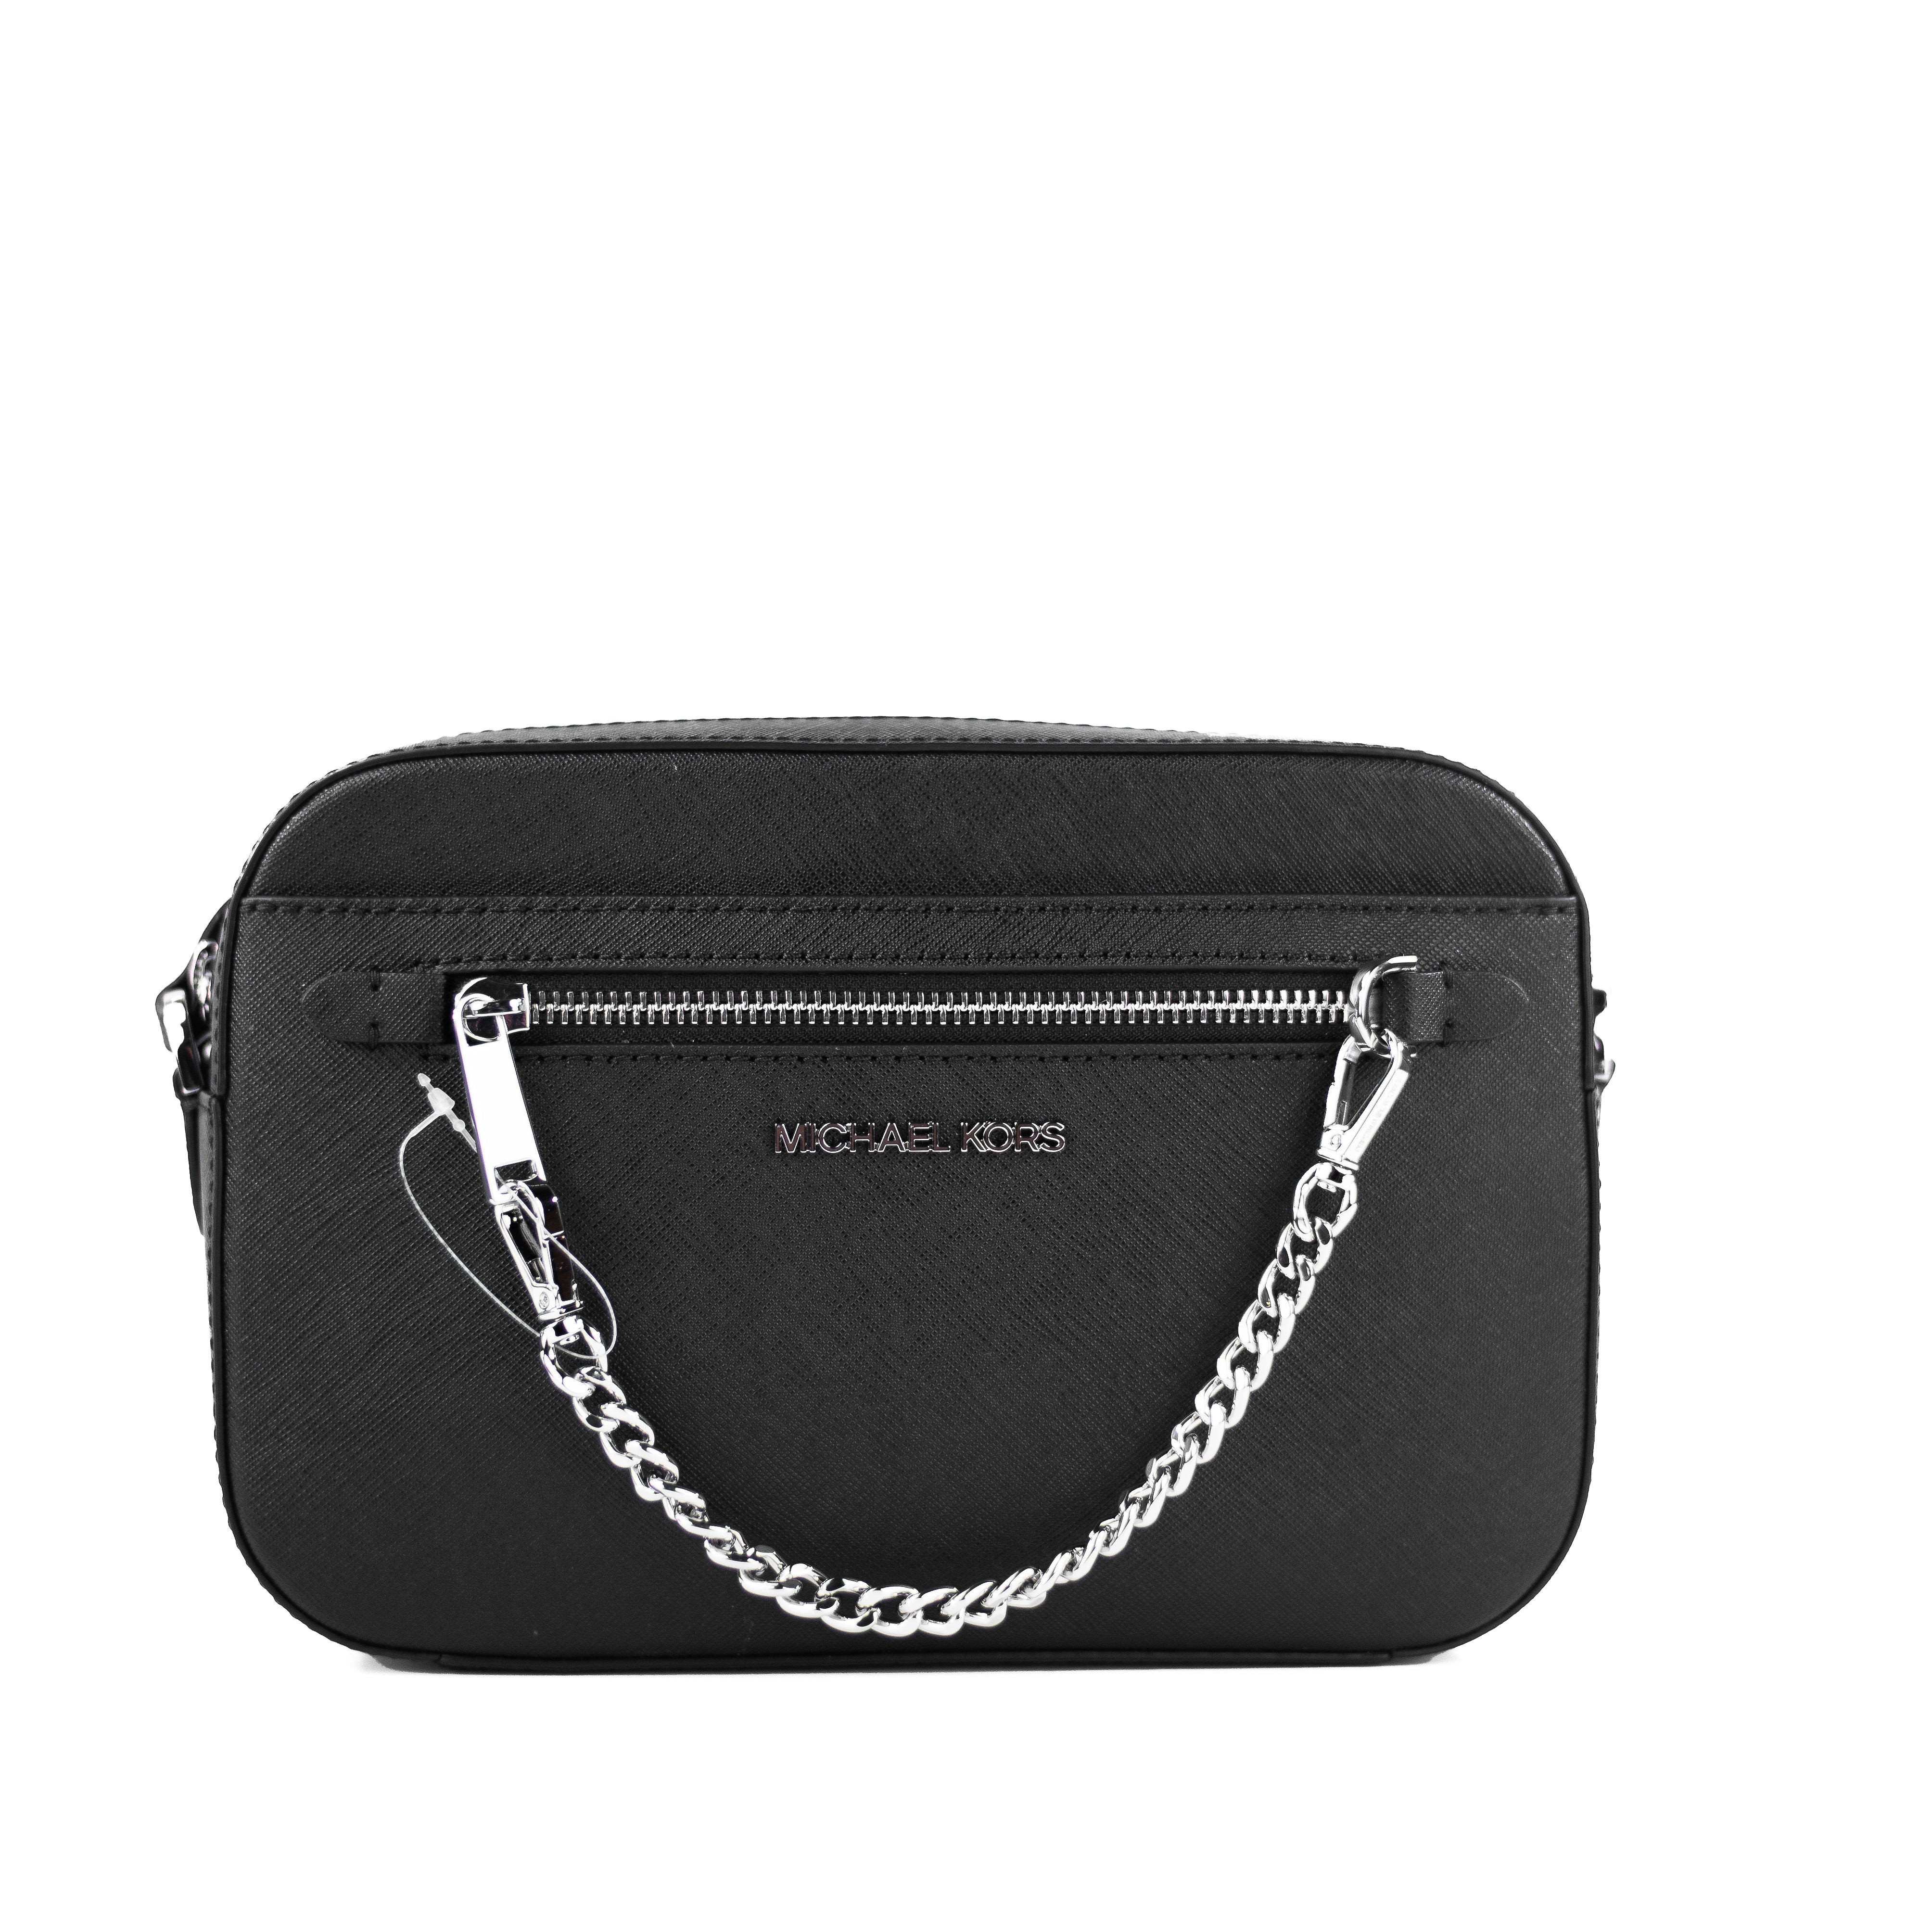 Michael Kors Women Large Leather Shoulder Tote Handbag Purse Bag Black  +Wristlet 193599717401 | eBay